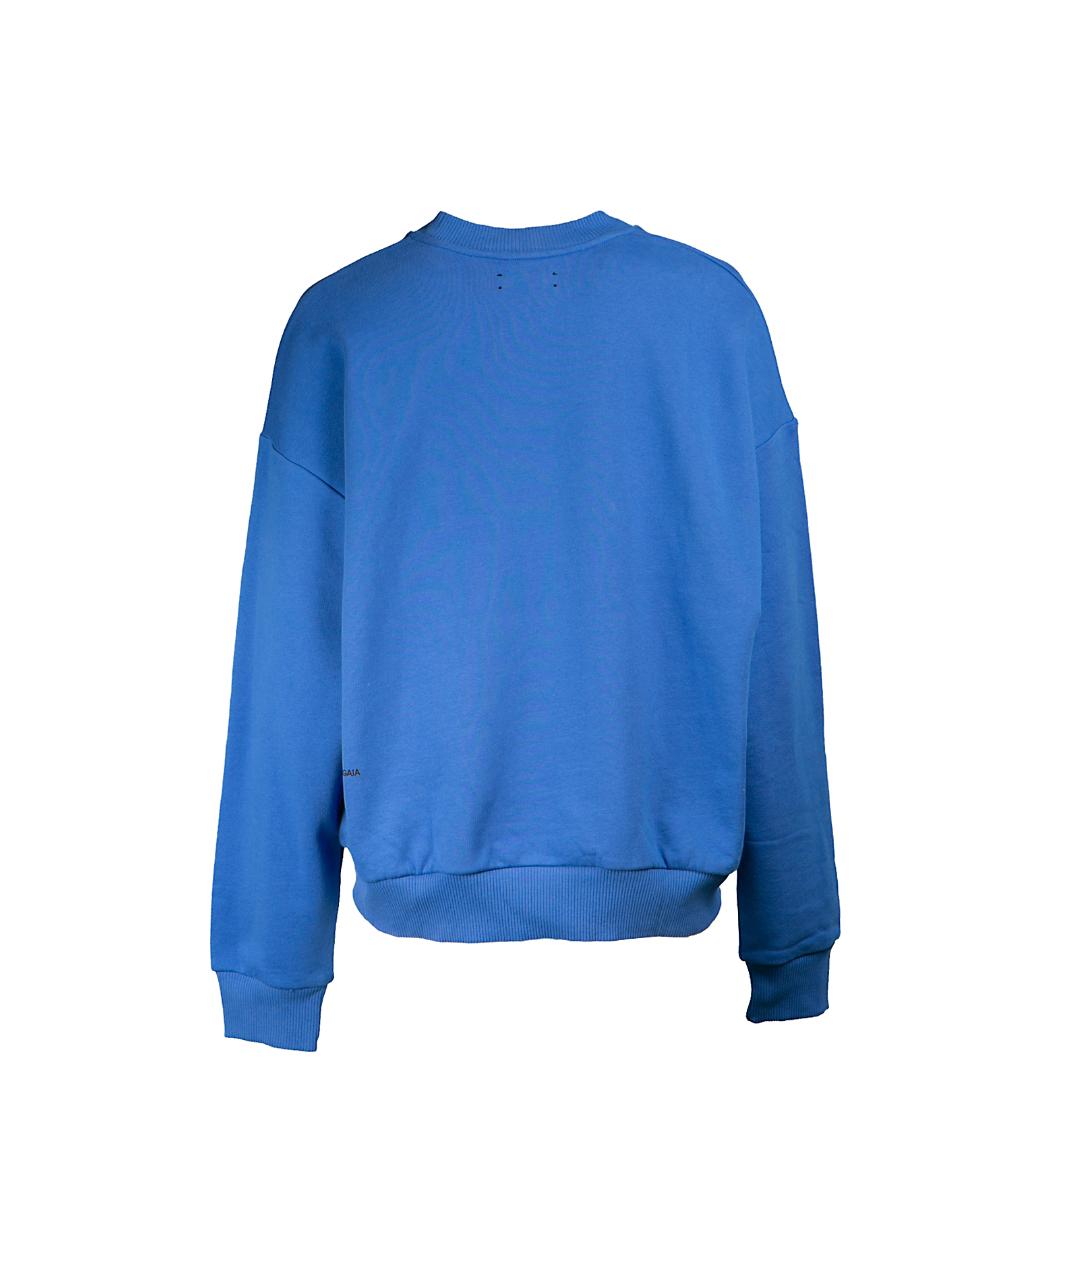 THE PANGAIA Синий джемпер / свитер, фото 3